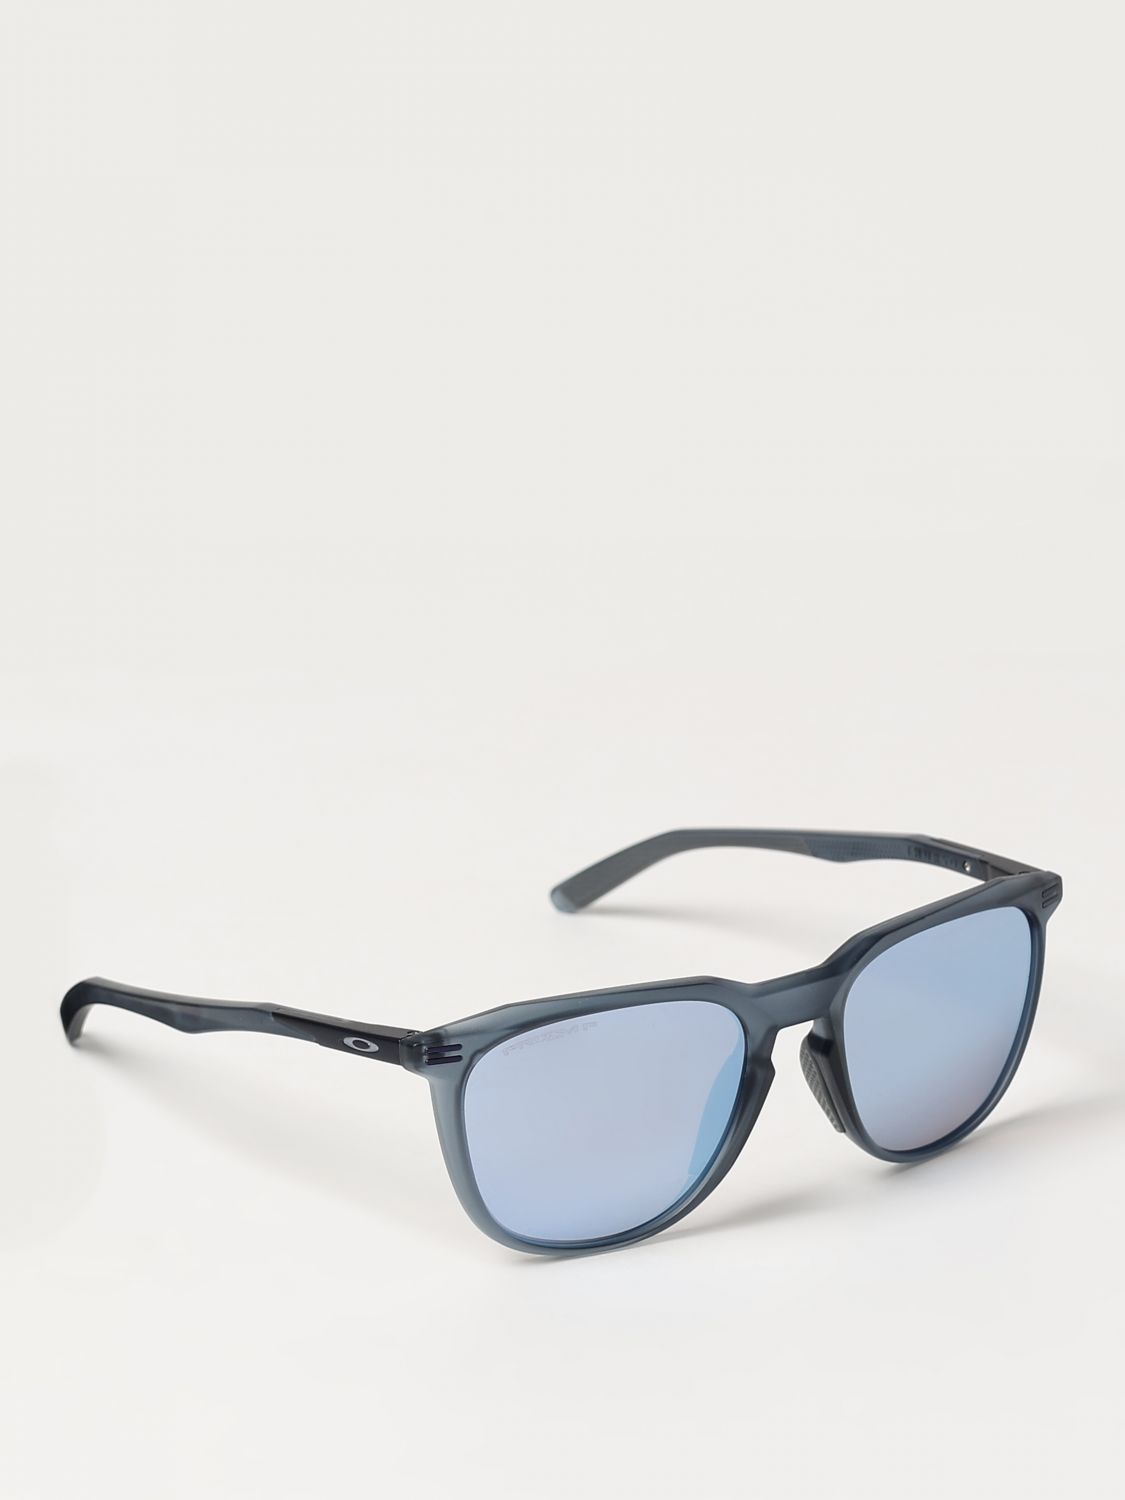 Sunglasses OAKLEY Men colour Fa01 - Size: 54 - male